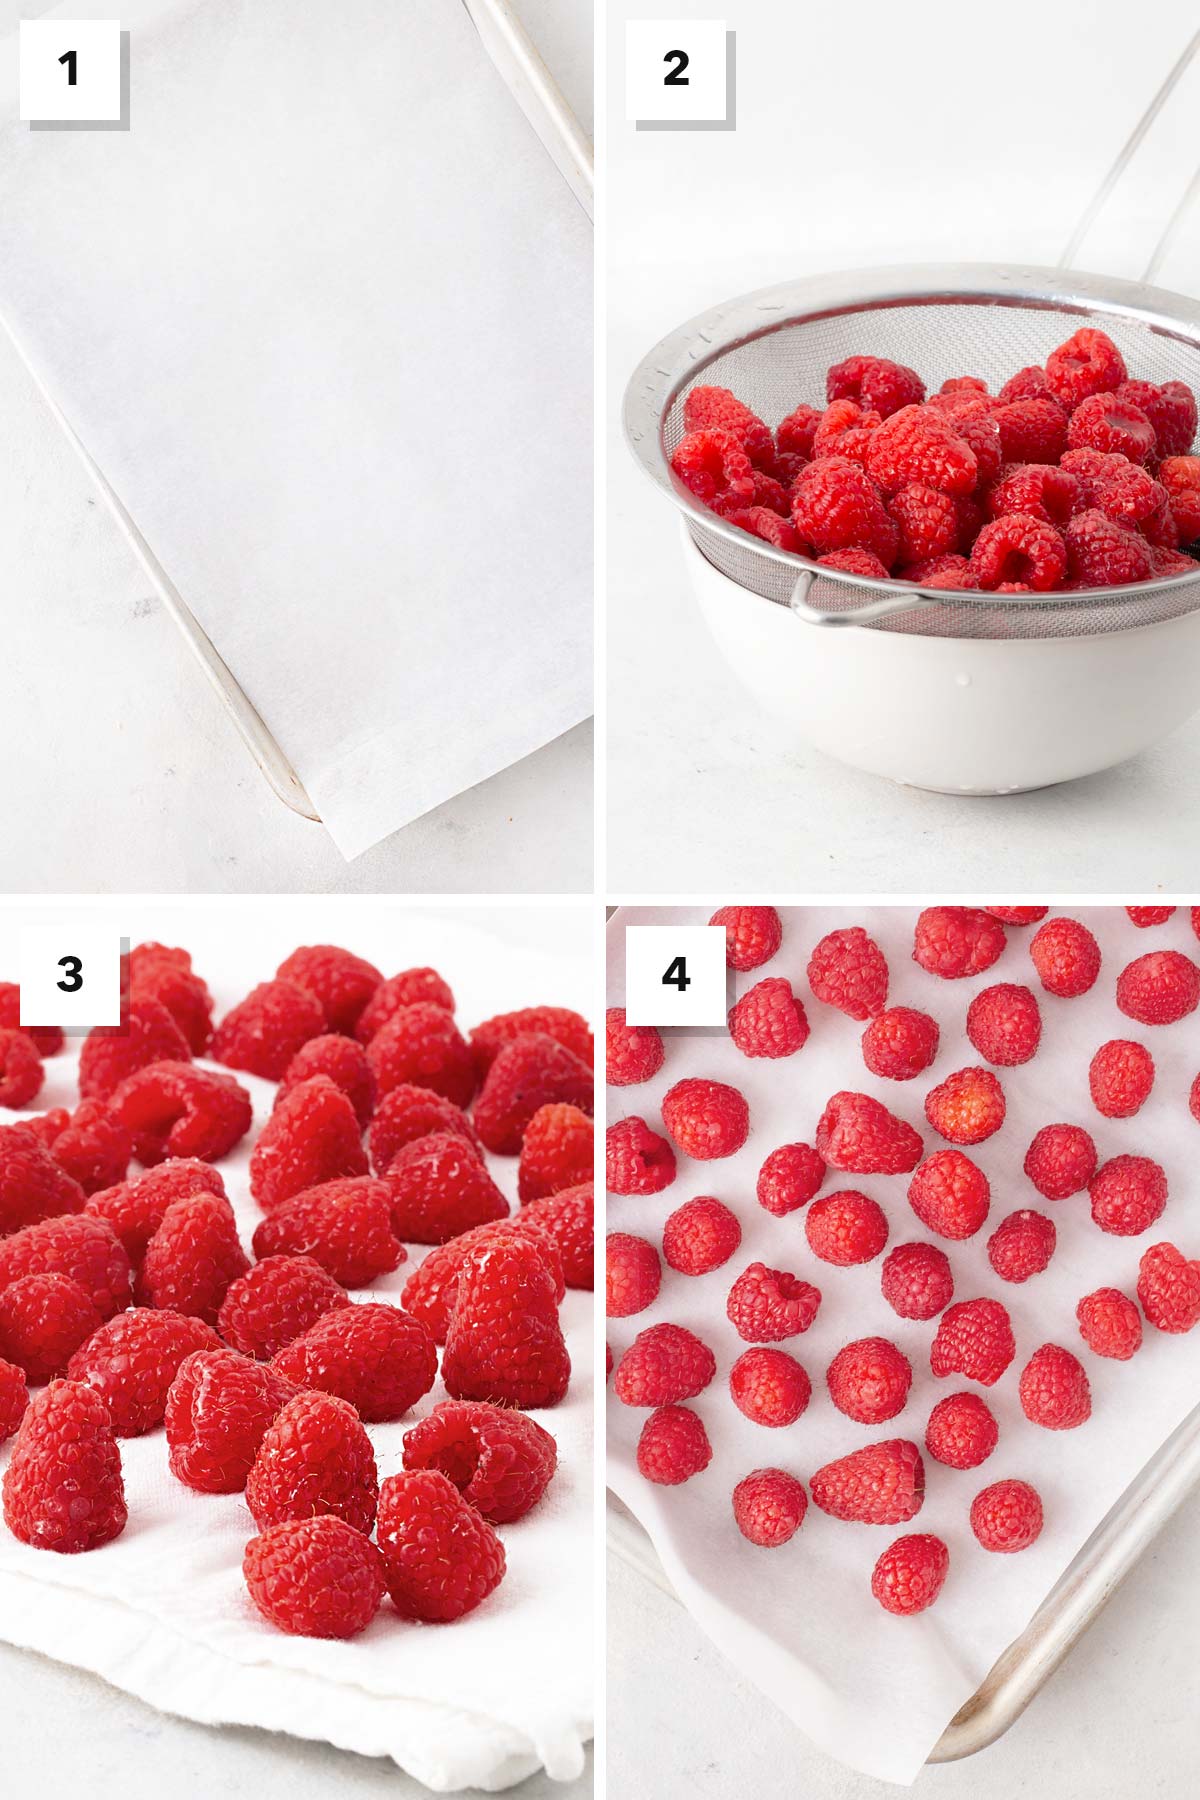 Steps for freezing raspberries.